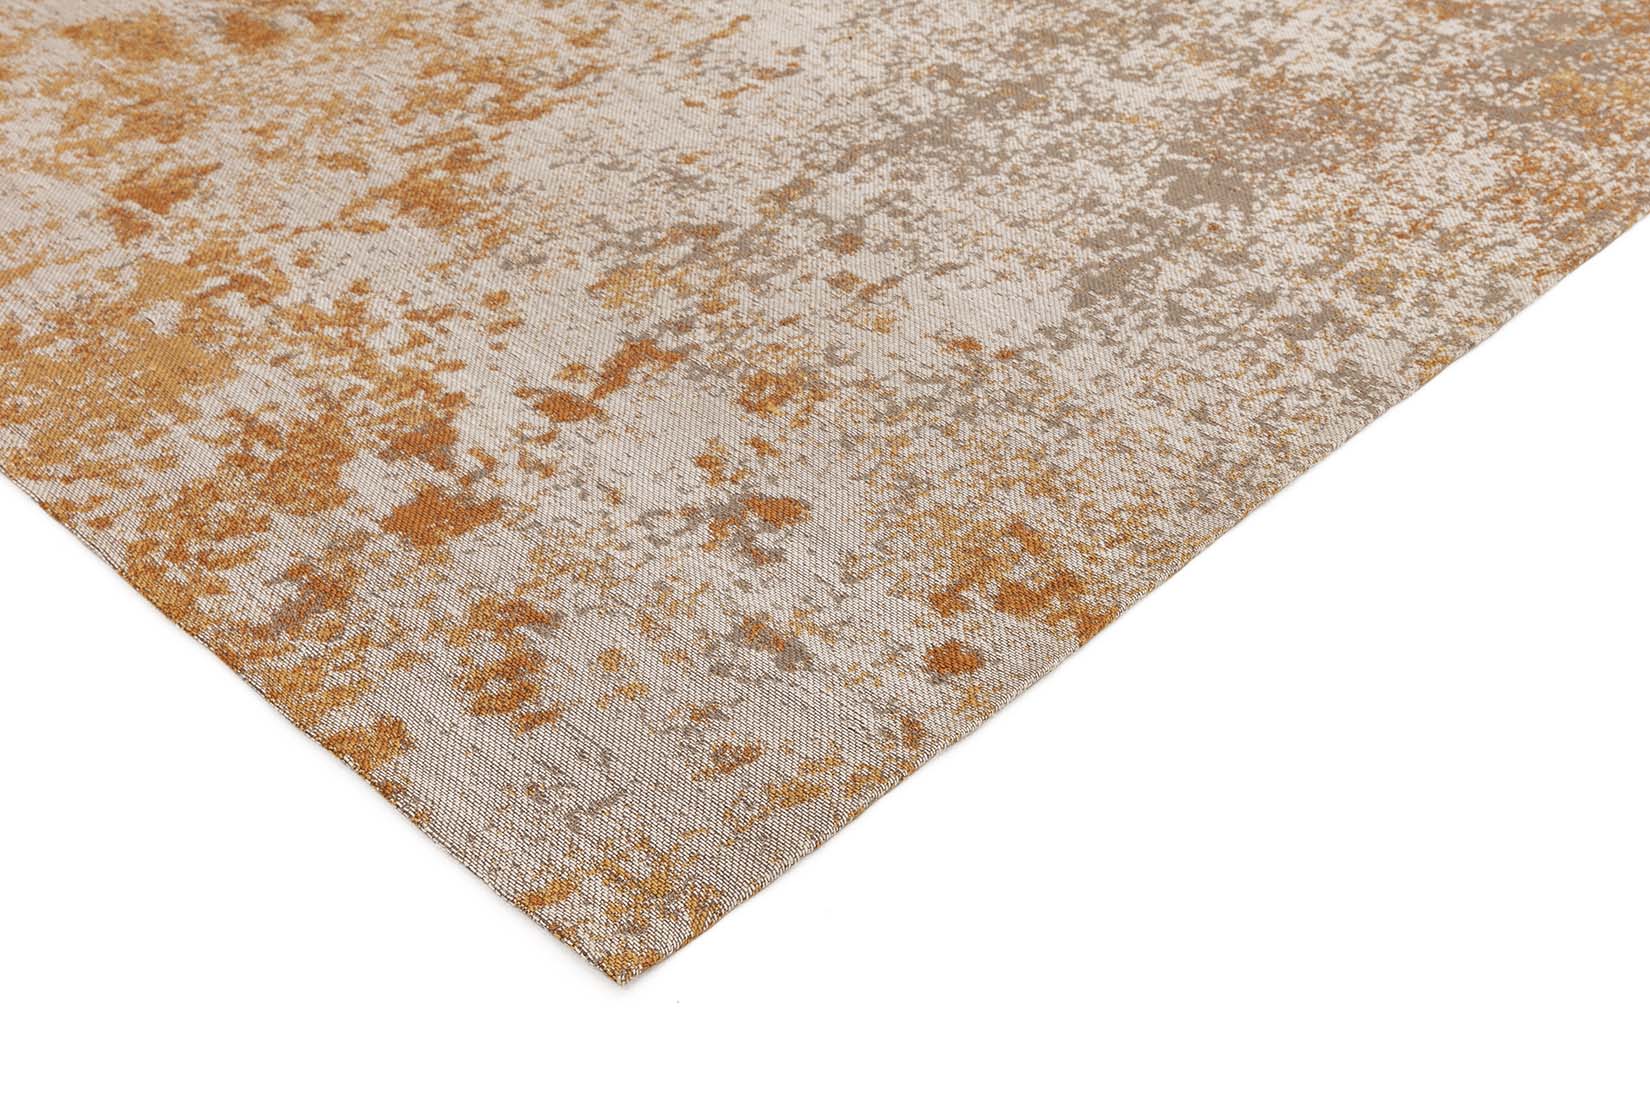 abstract indoor/outdoor rug in terracotta
